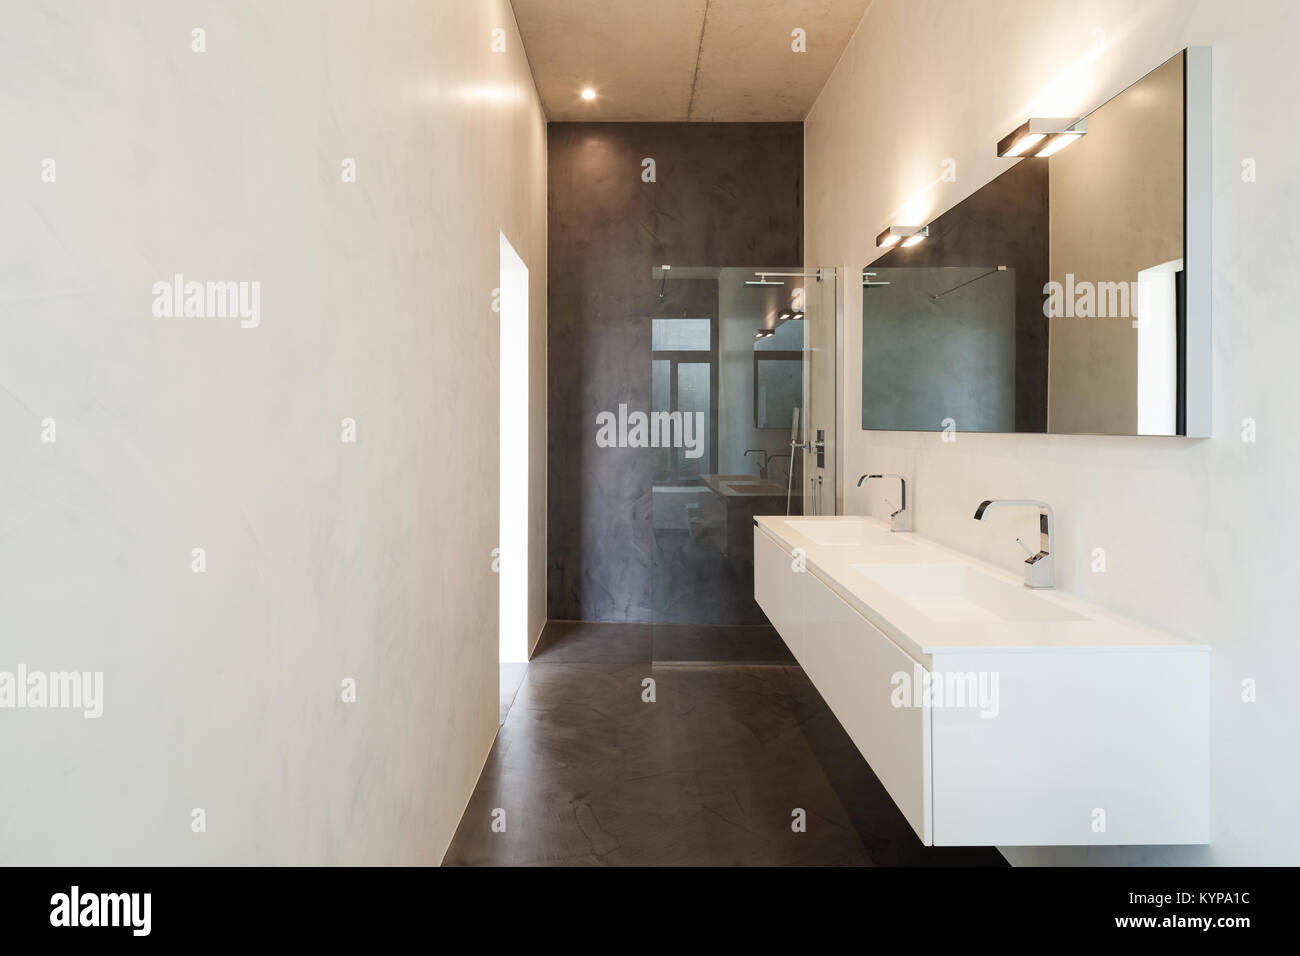 Intérieur de l'appartement, une salle de bains moderne avec douche et lavabo Banque D'Images